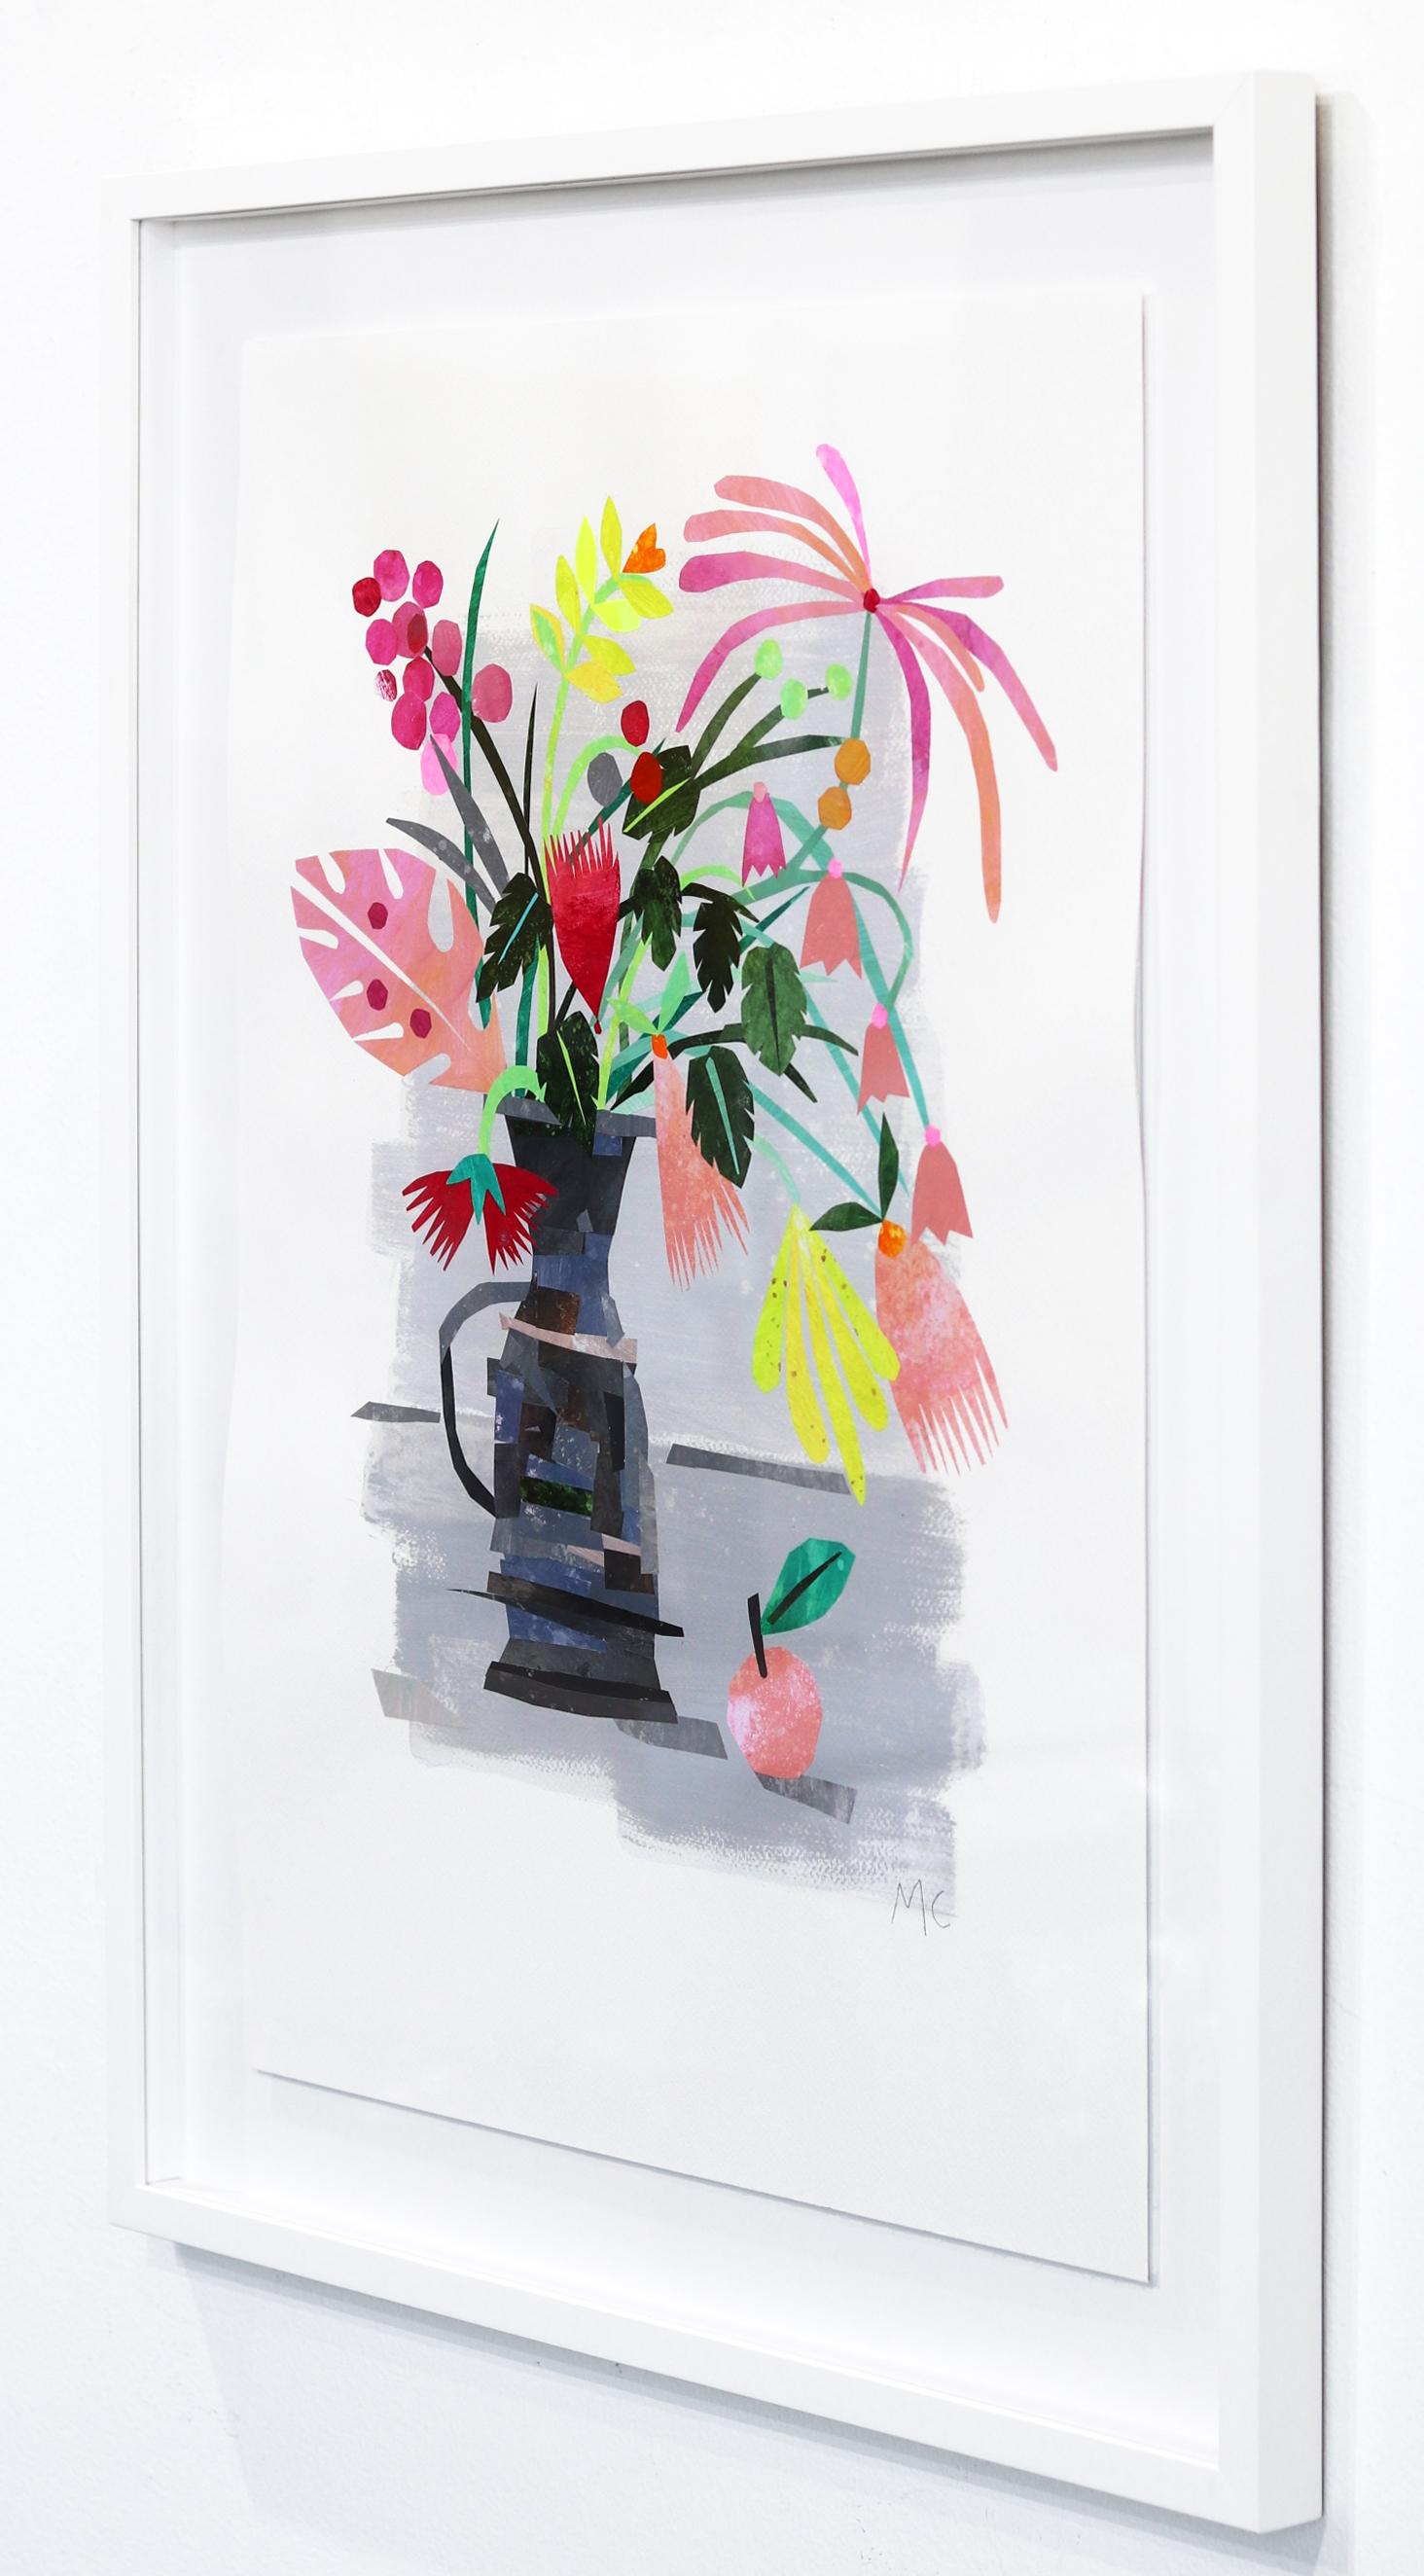 Garden Flowers - Abstract Impressionist Art by Maria C. Bernhardsson